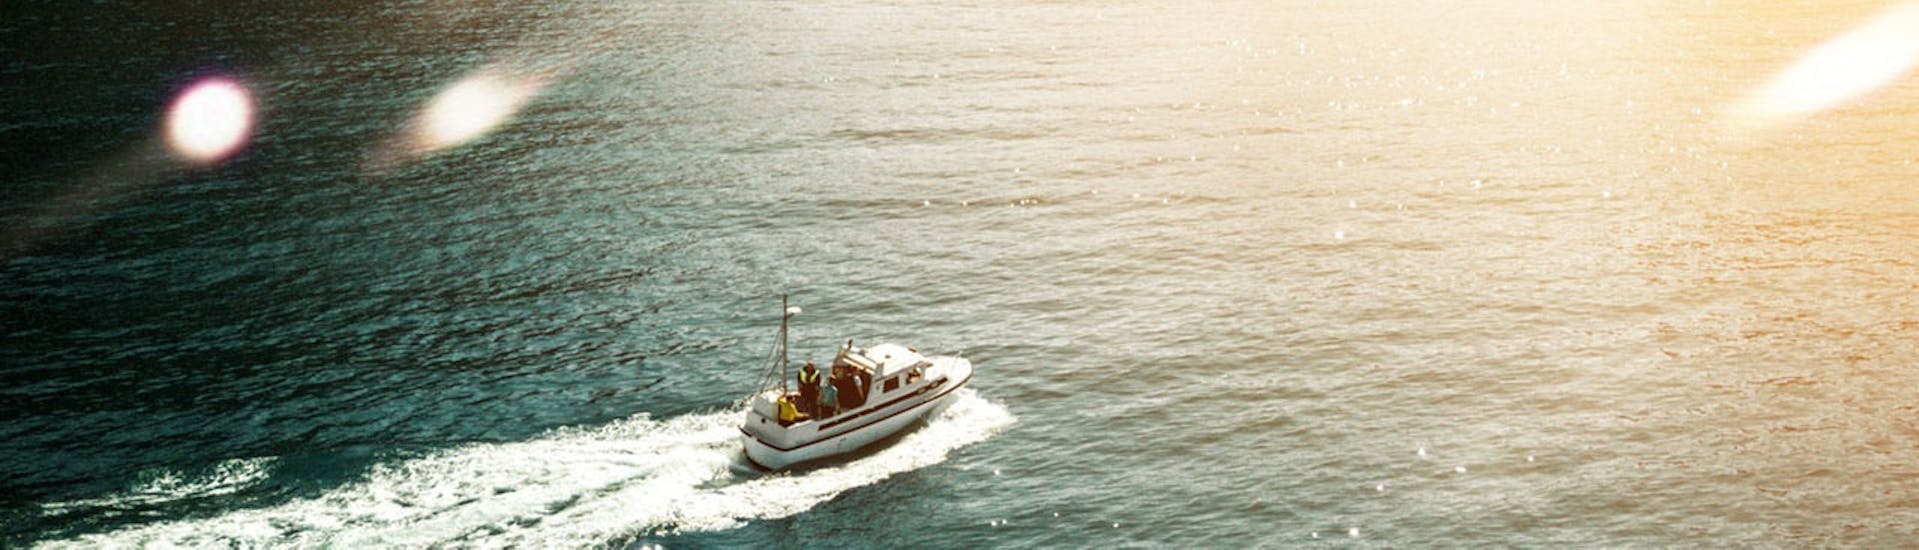 Bateau qui a été loué lors de la Location de bateau à Hyères (jusqu'à 5 personnes) avec Kraken Sport Nautiques Hyères.